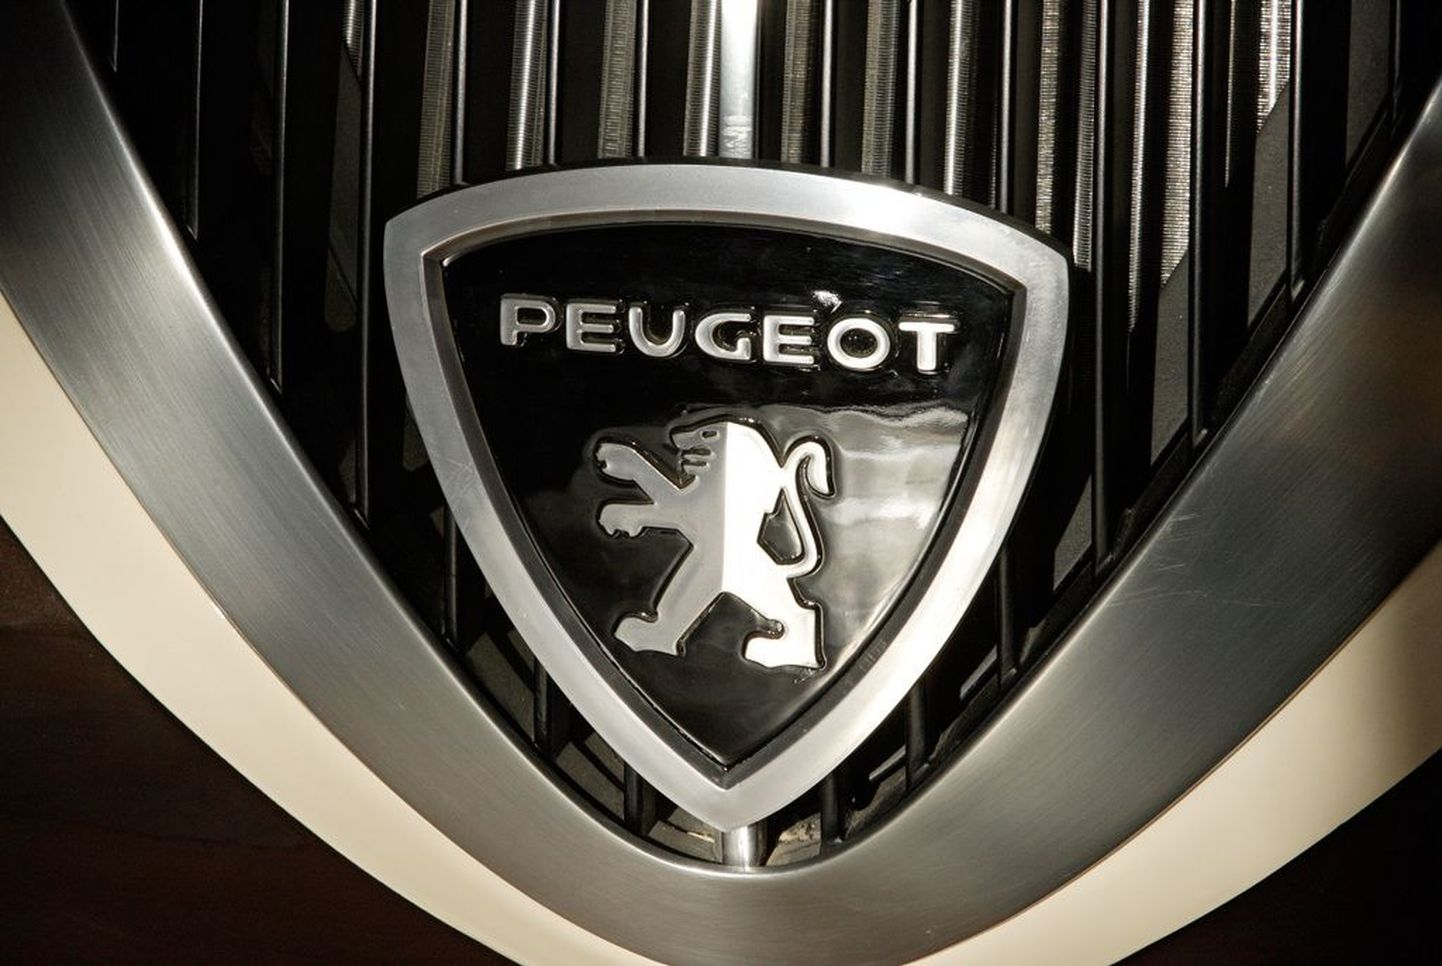 Peugeot vana ja väärikas logo.